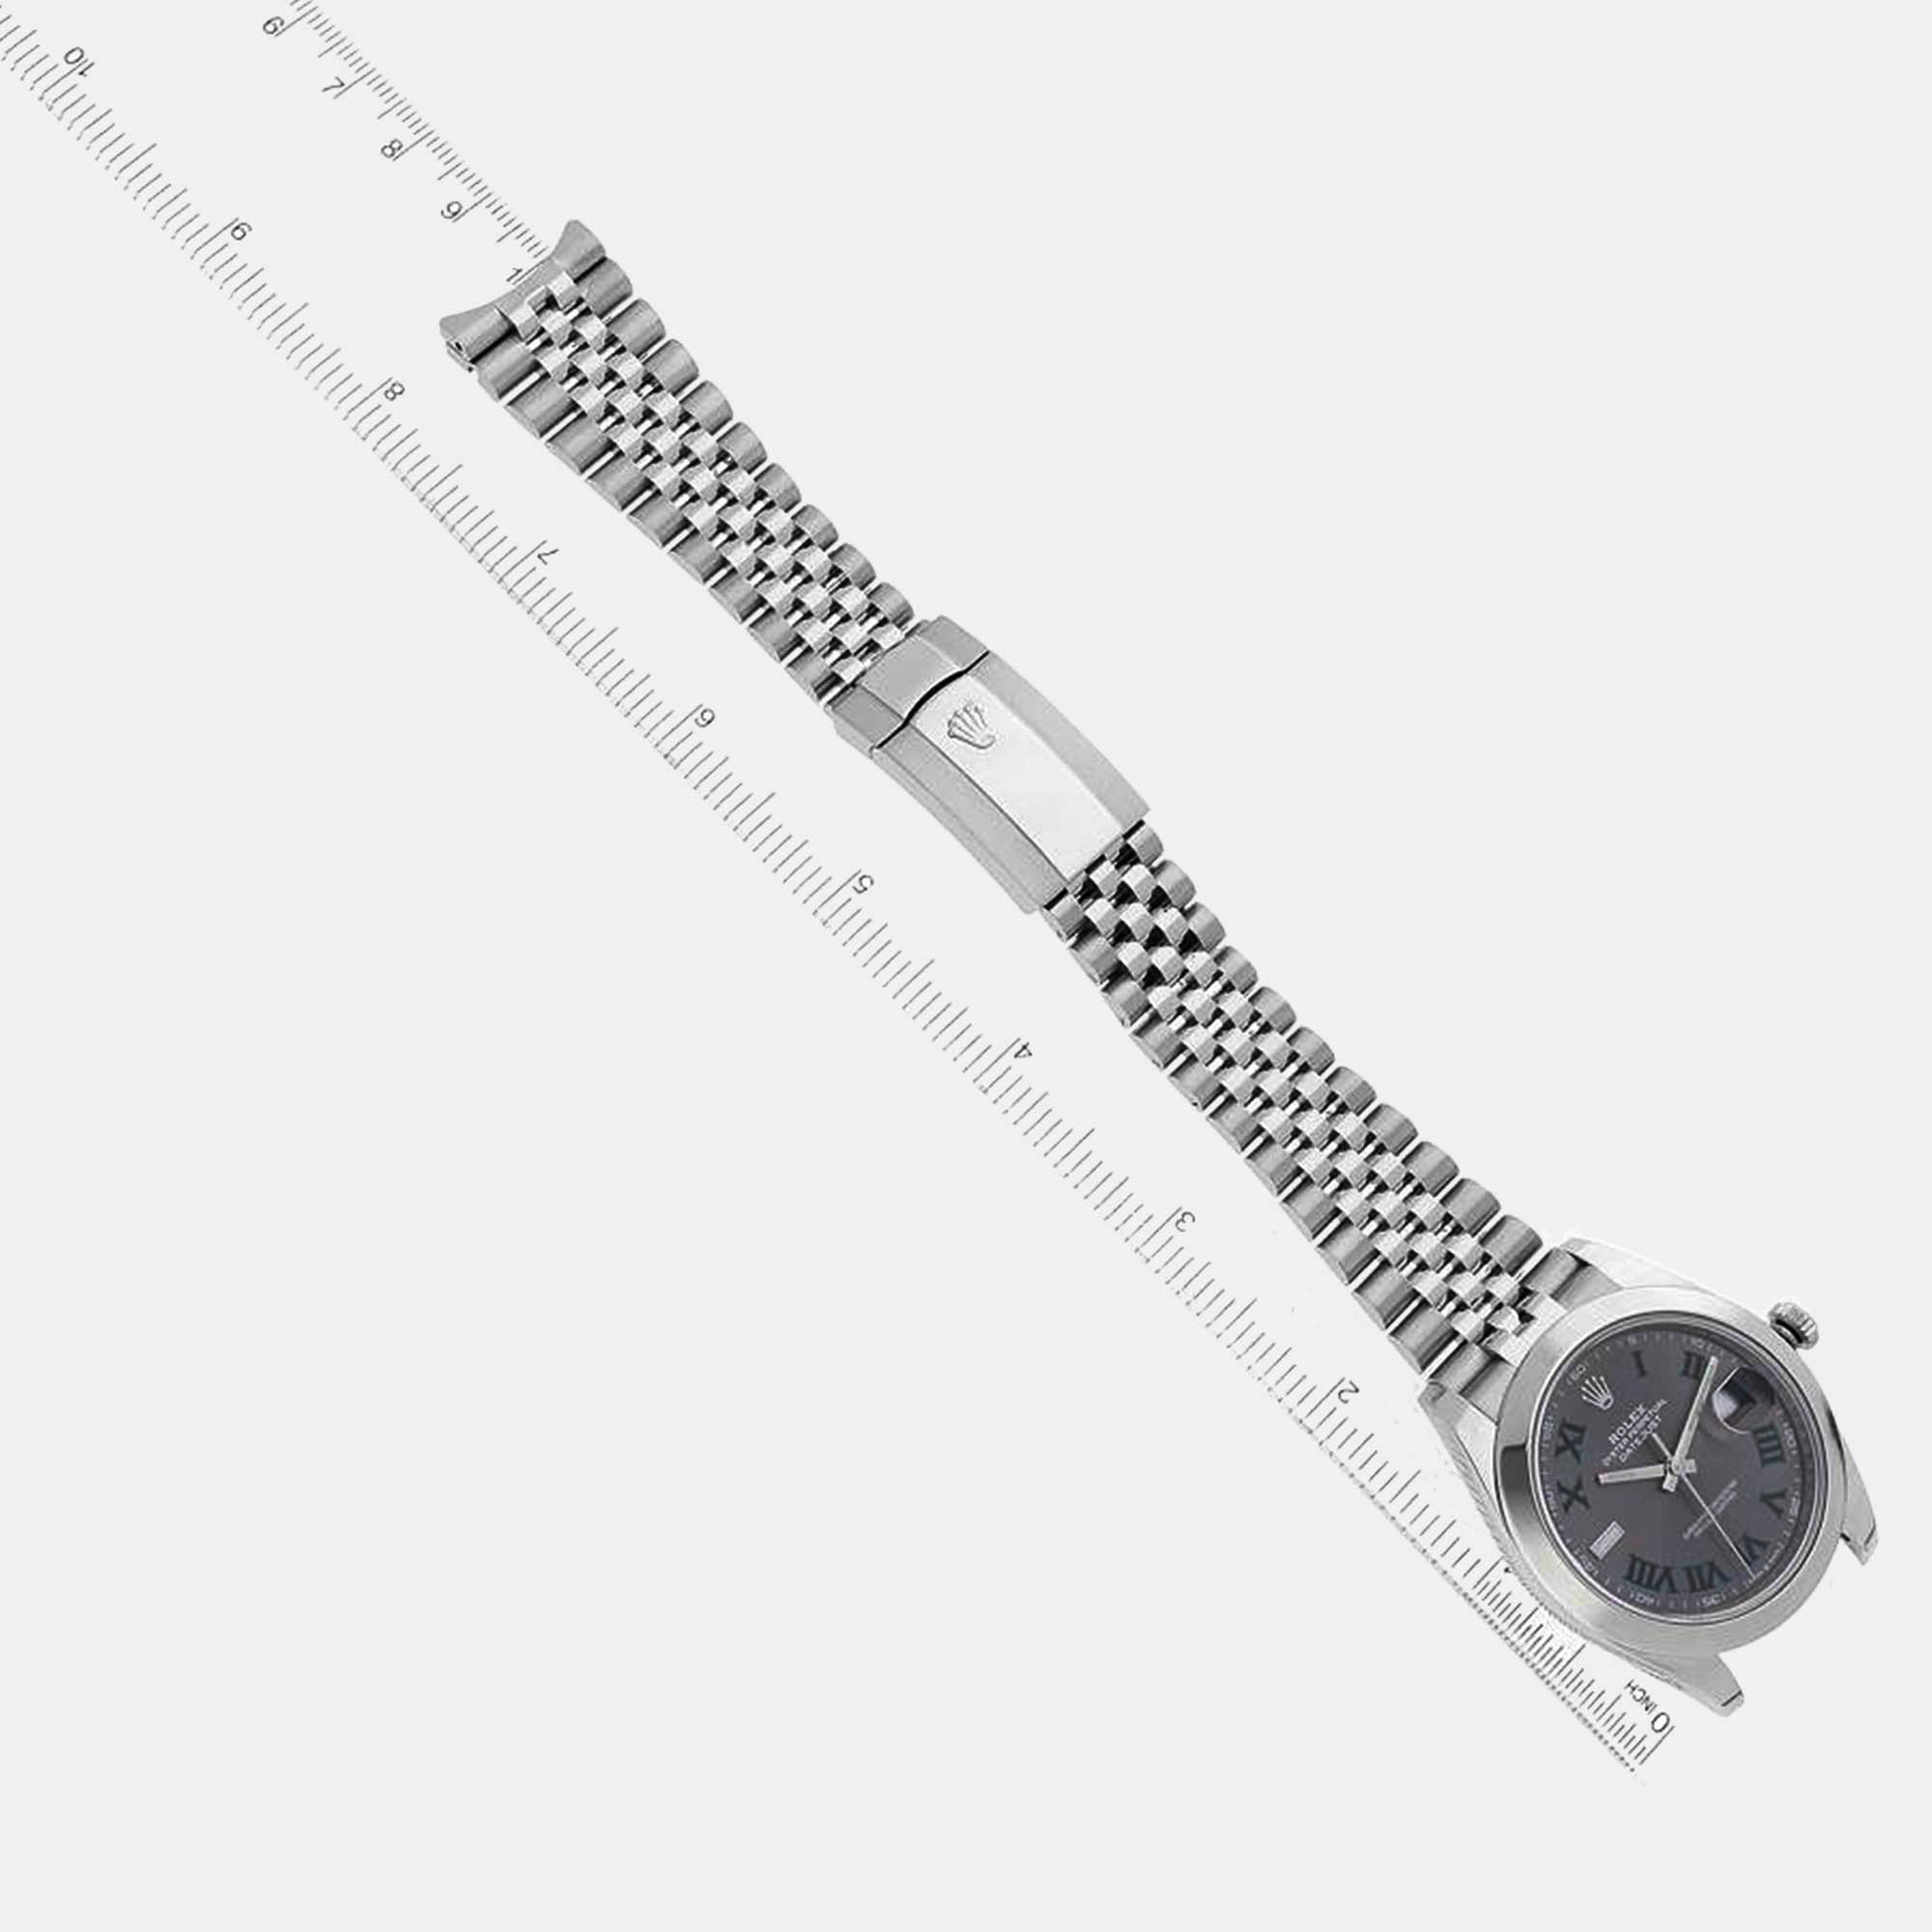 Rolex Datejust Grey Green Wimbledon Dial Steel Men's Watch 126300 41 Mm